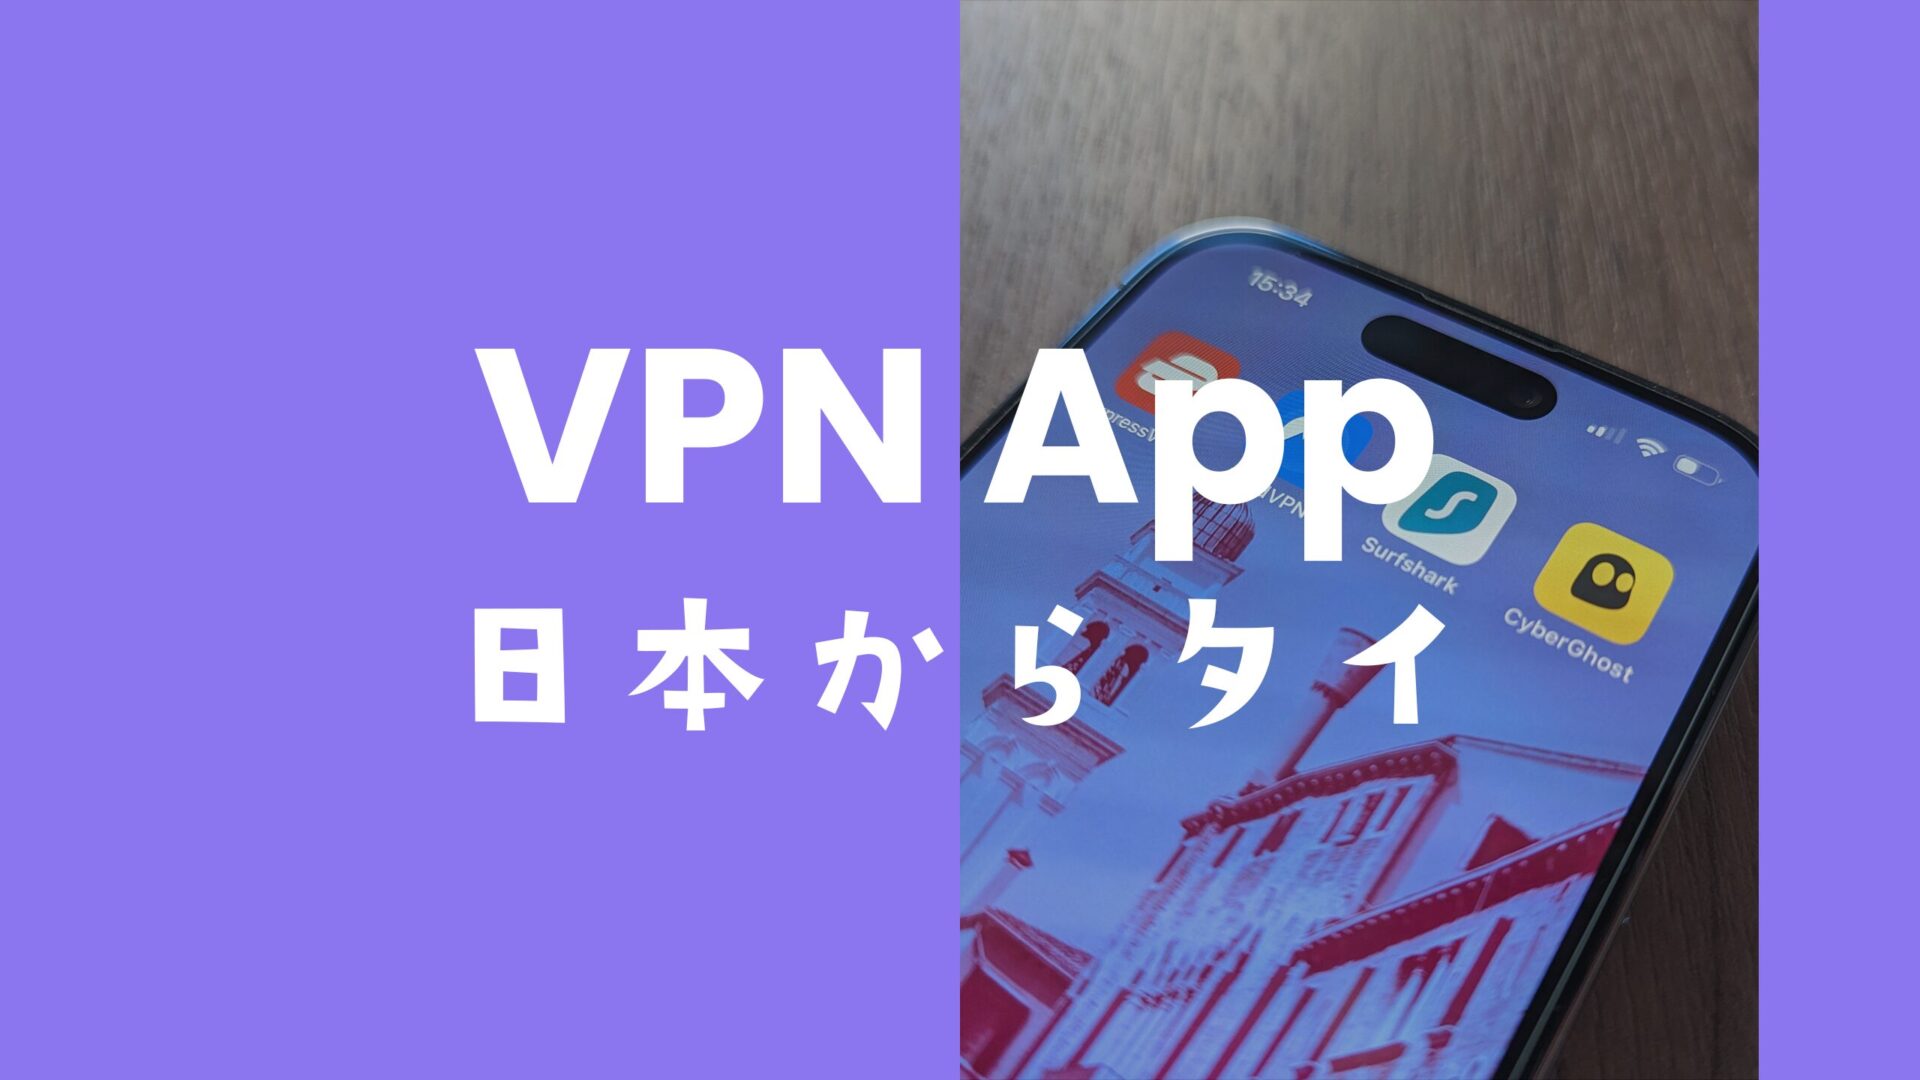 VPNで日本からタイに接続できるサービスのおすすめを解説。のサムネイル画像